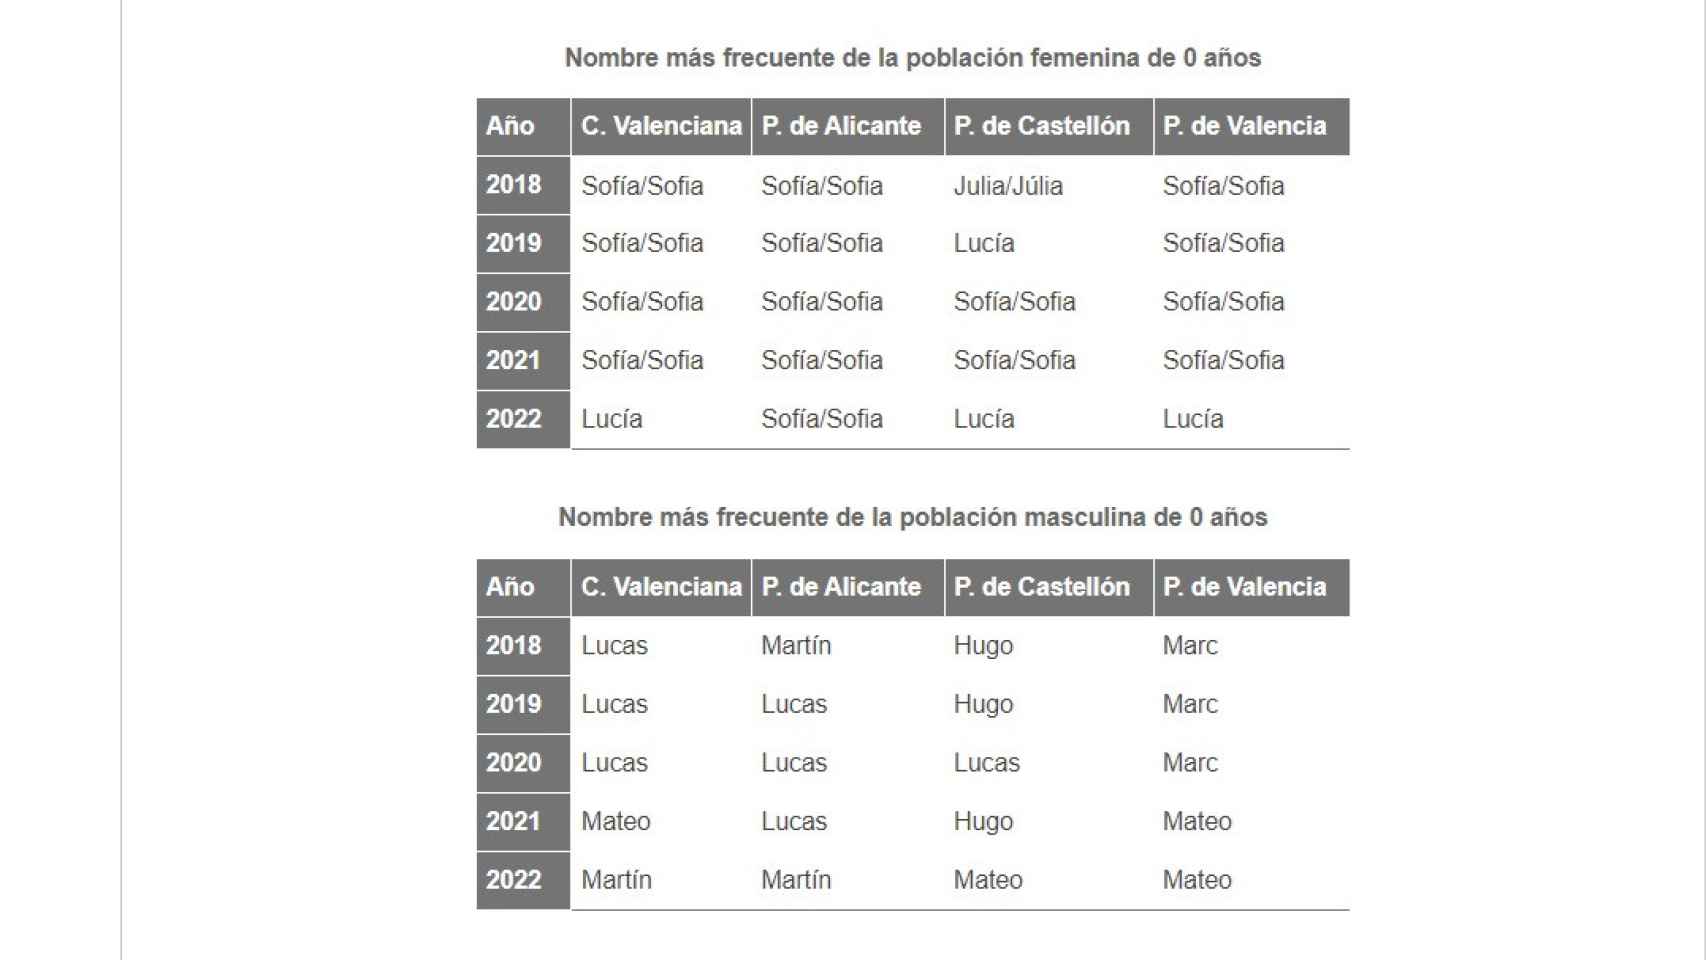 Nombres preferidos para los recién nacidos en las tres provincias y en el conjunto de la Comunitat Valenciana.